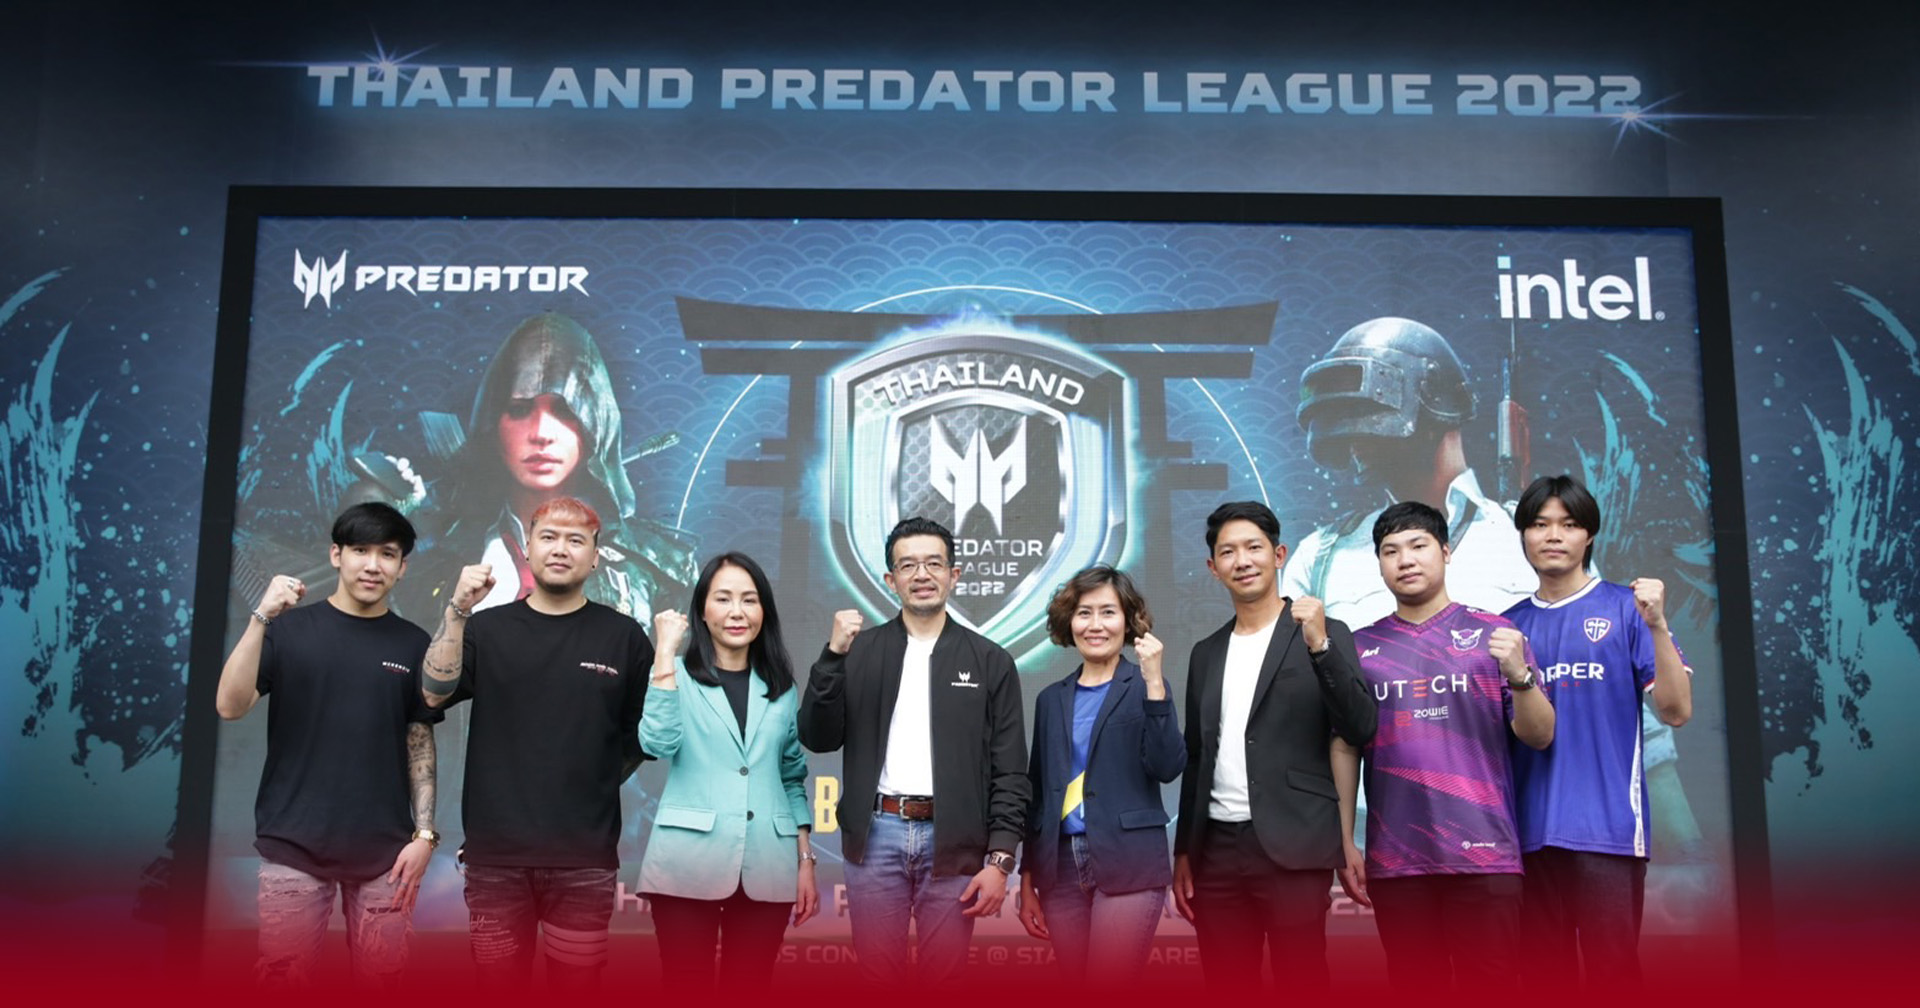 เอเซอร์ คืนสังเวียนปลุกสมรภูมิ “Thailand Predator League 2022” จัดศึกแห่งศักดิ์ศรี ใครจะเป็นตัวแทนประเทศไทย